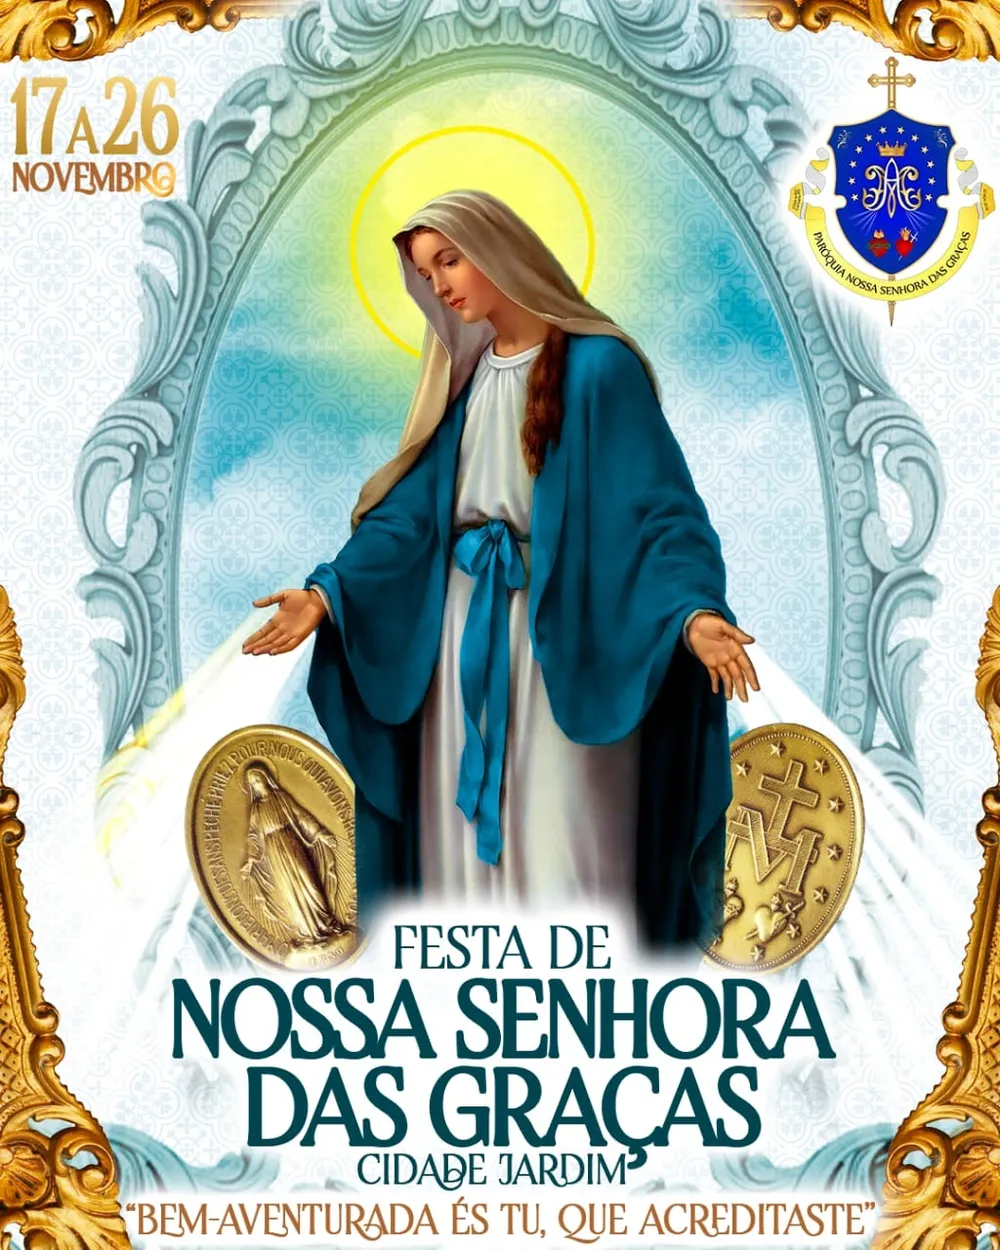 Confira programação da Festa de Nossa Senhora das Graças em Caruaru